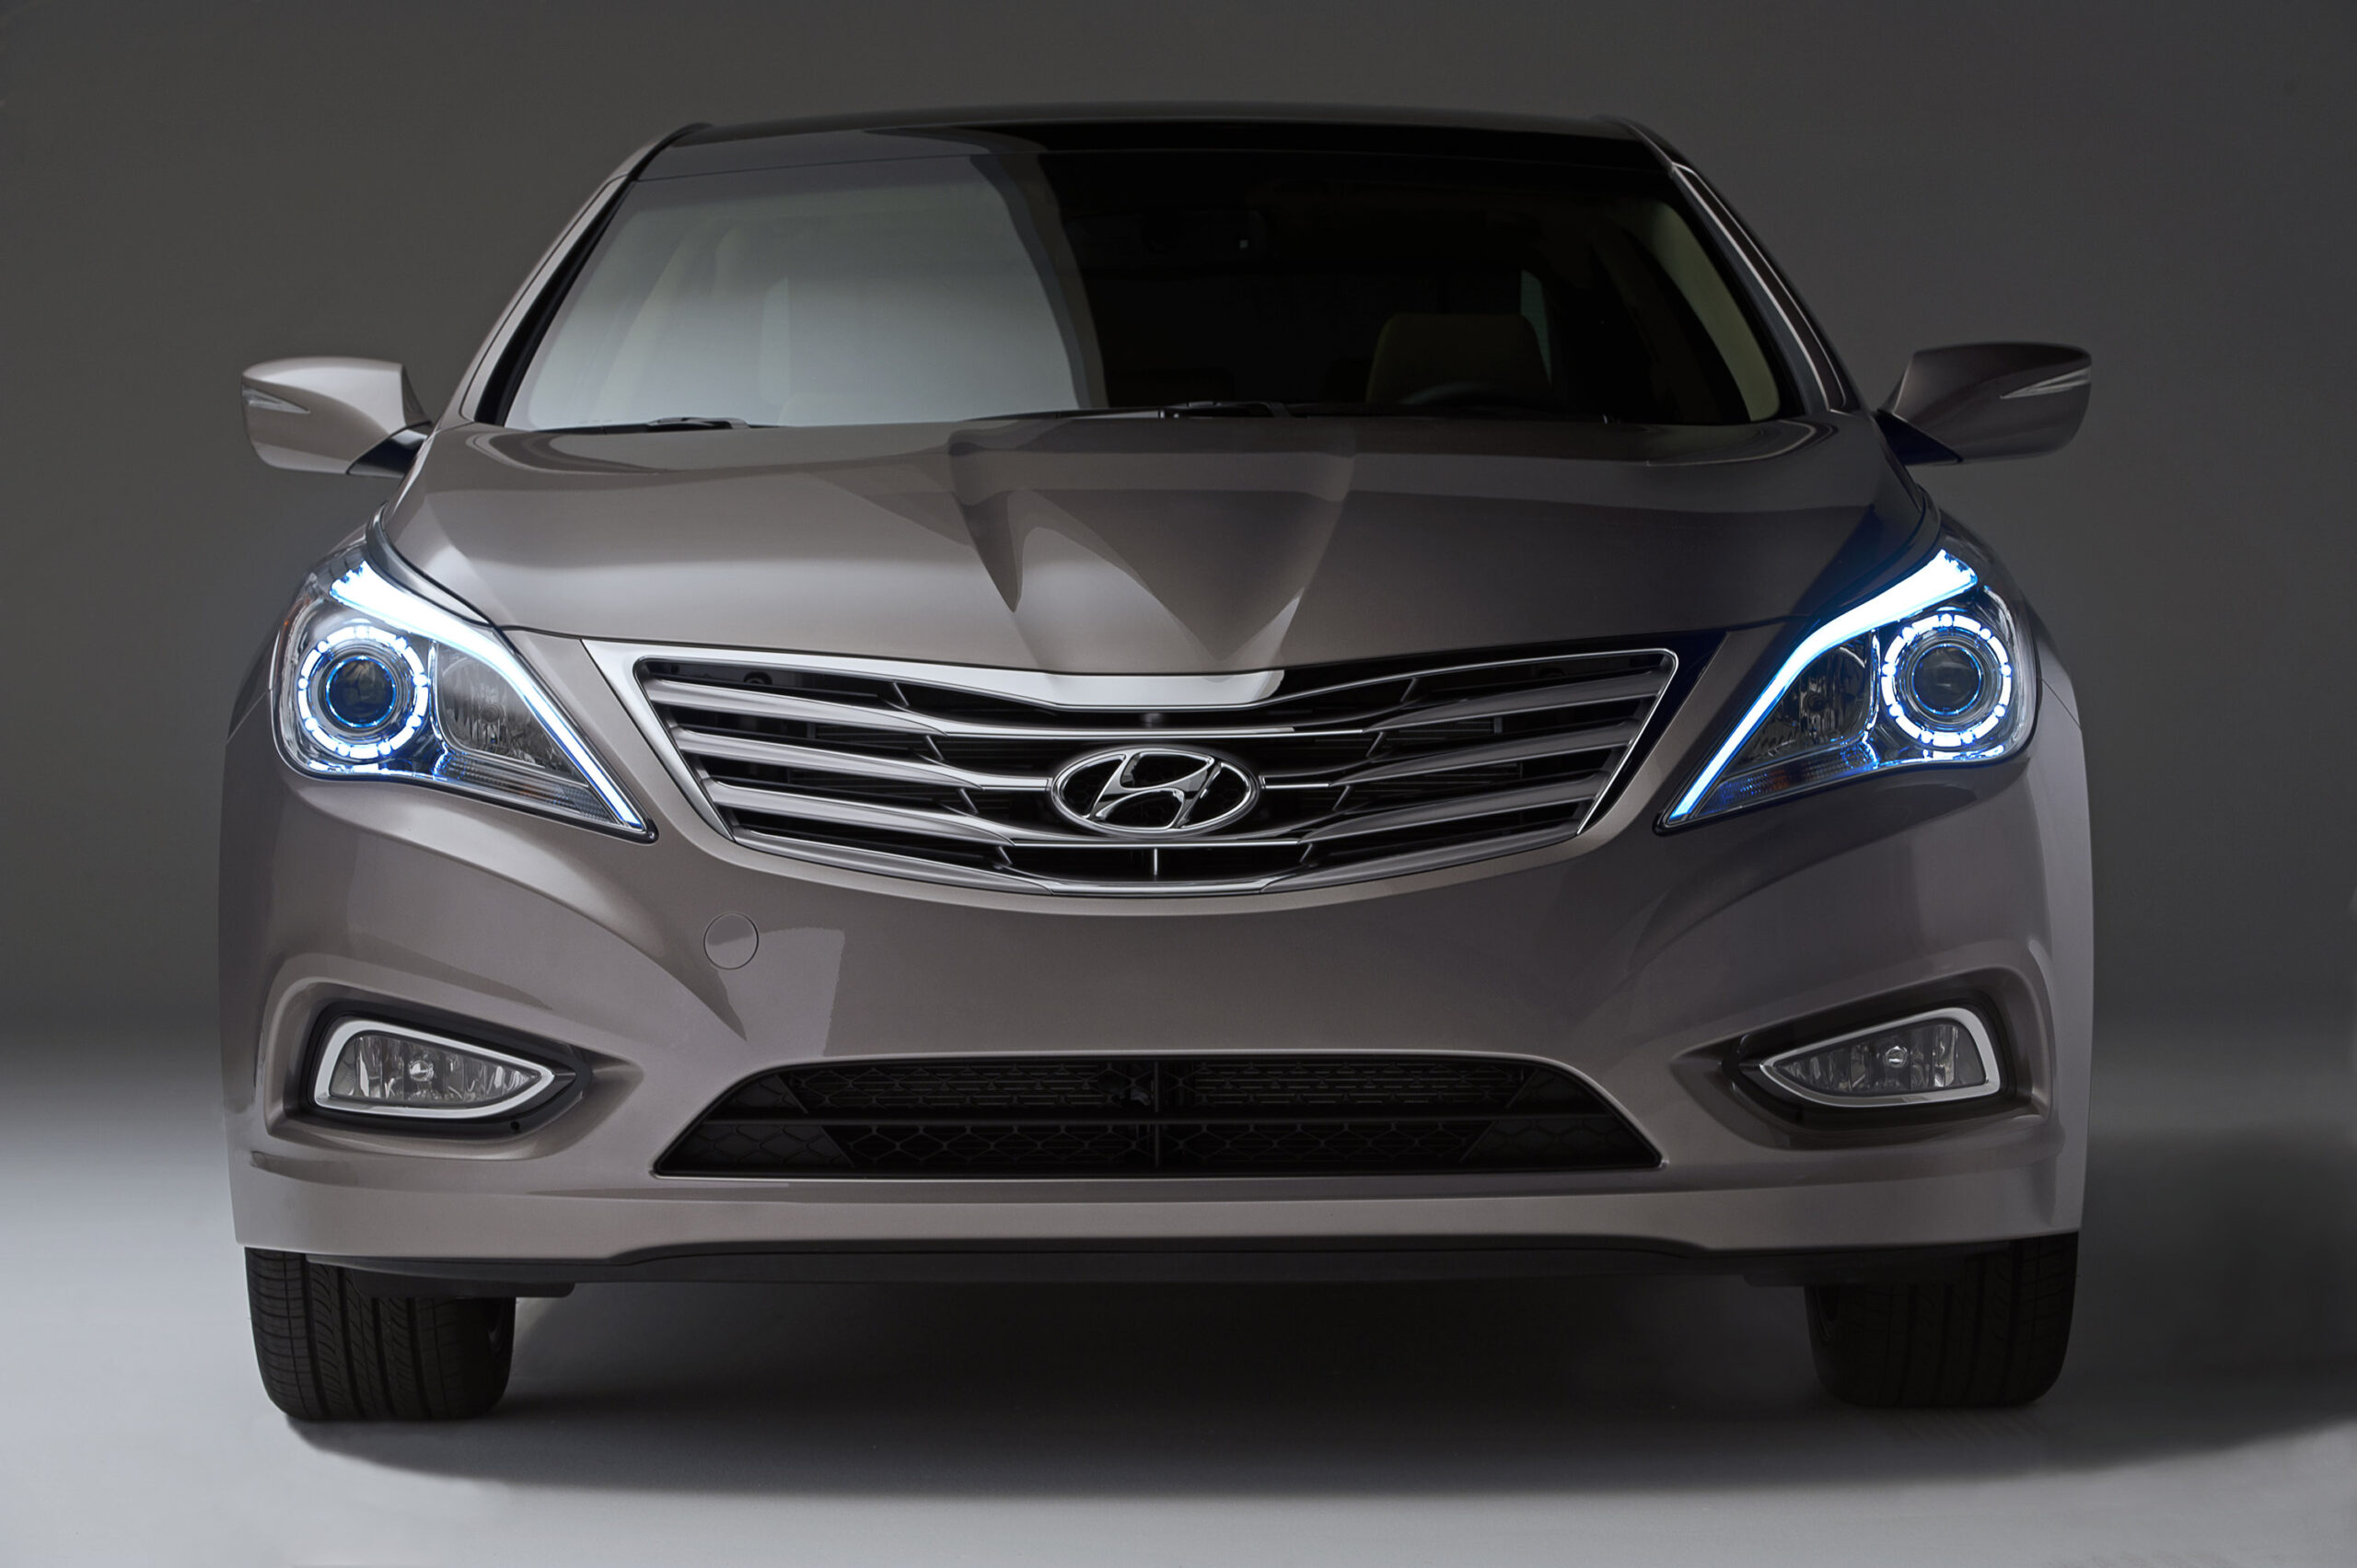 Hình ảnh xe Hyundai Grandeur sắc nét và đẹp mắt 5